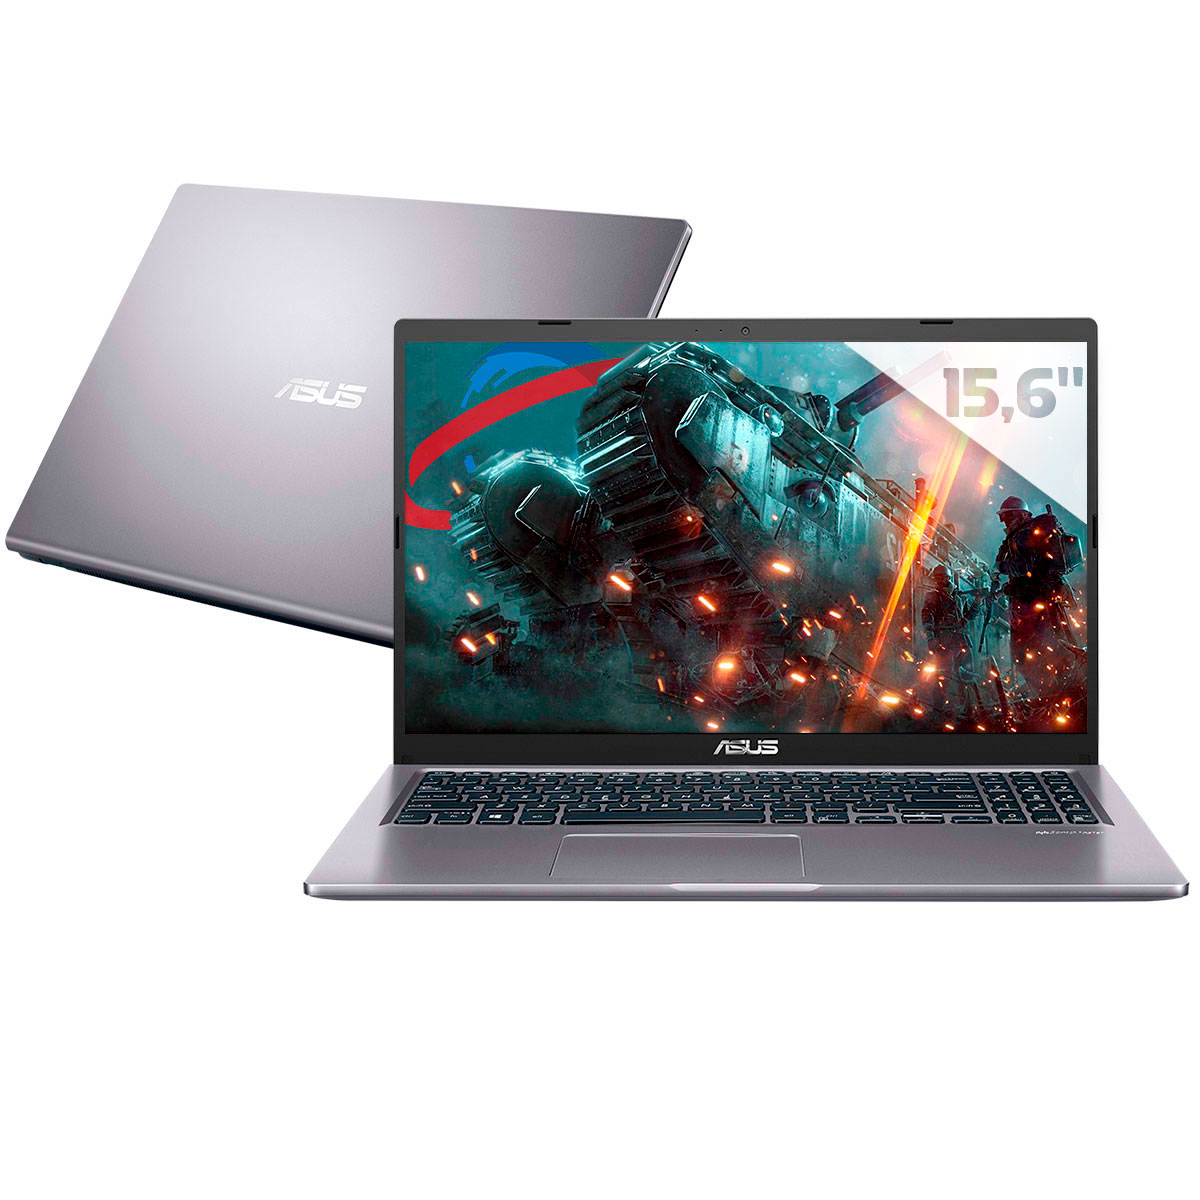 Notebook Asus X515JF-EJ153T - Intel i5 1035G1, RAM 16GB, SSD 256GB, GeForce MX130, Tela 15.6